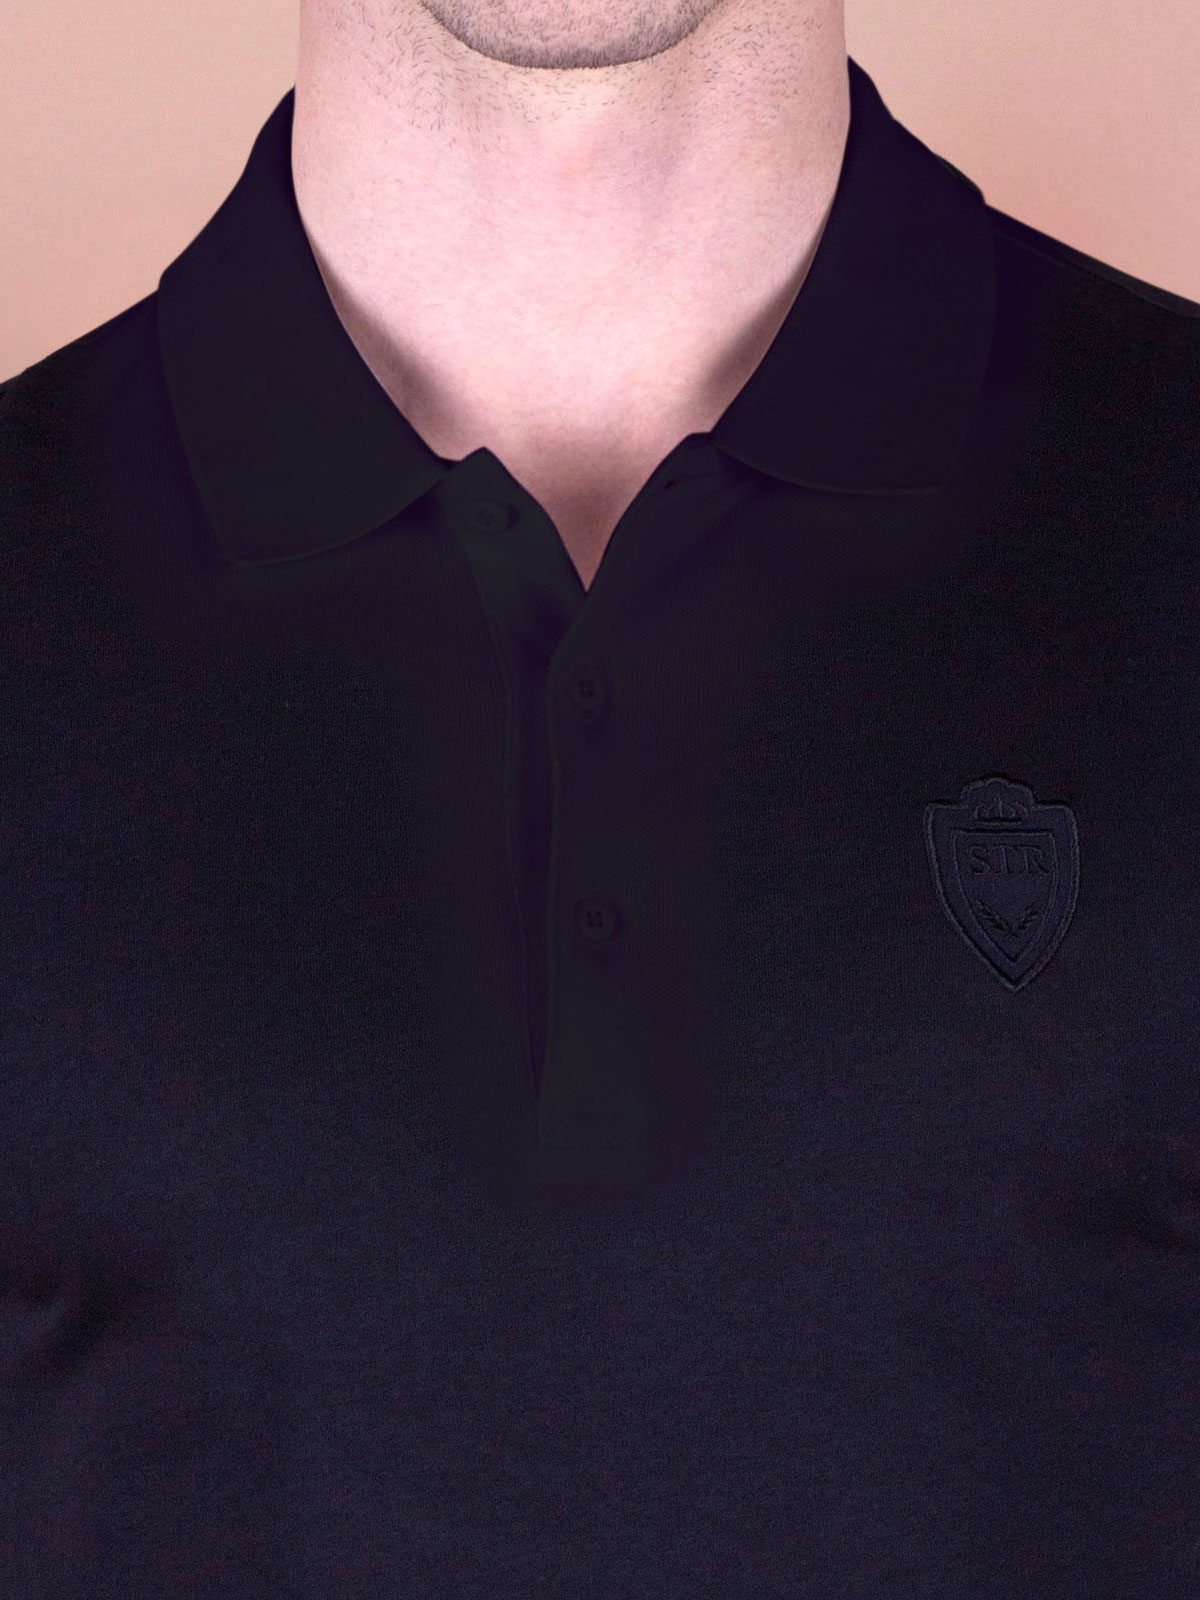 Bluză neagră cu logo brodat - 94370 € 16.31 img2